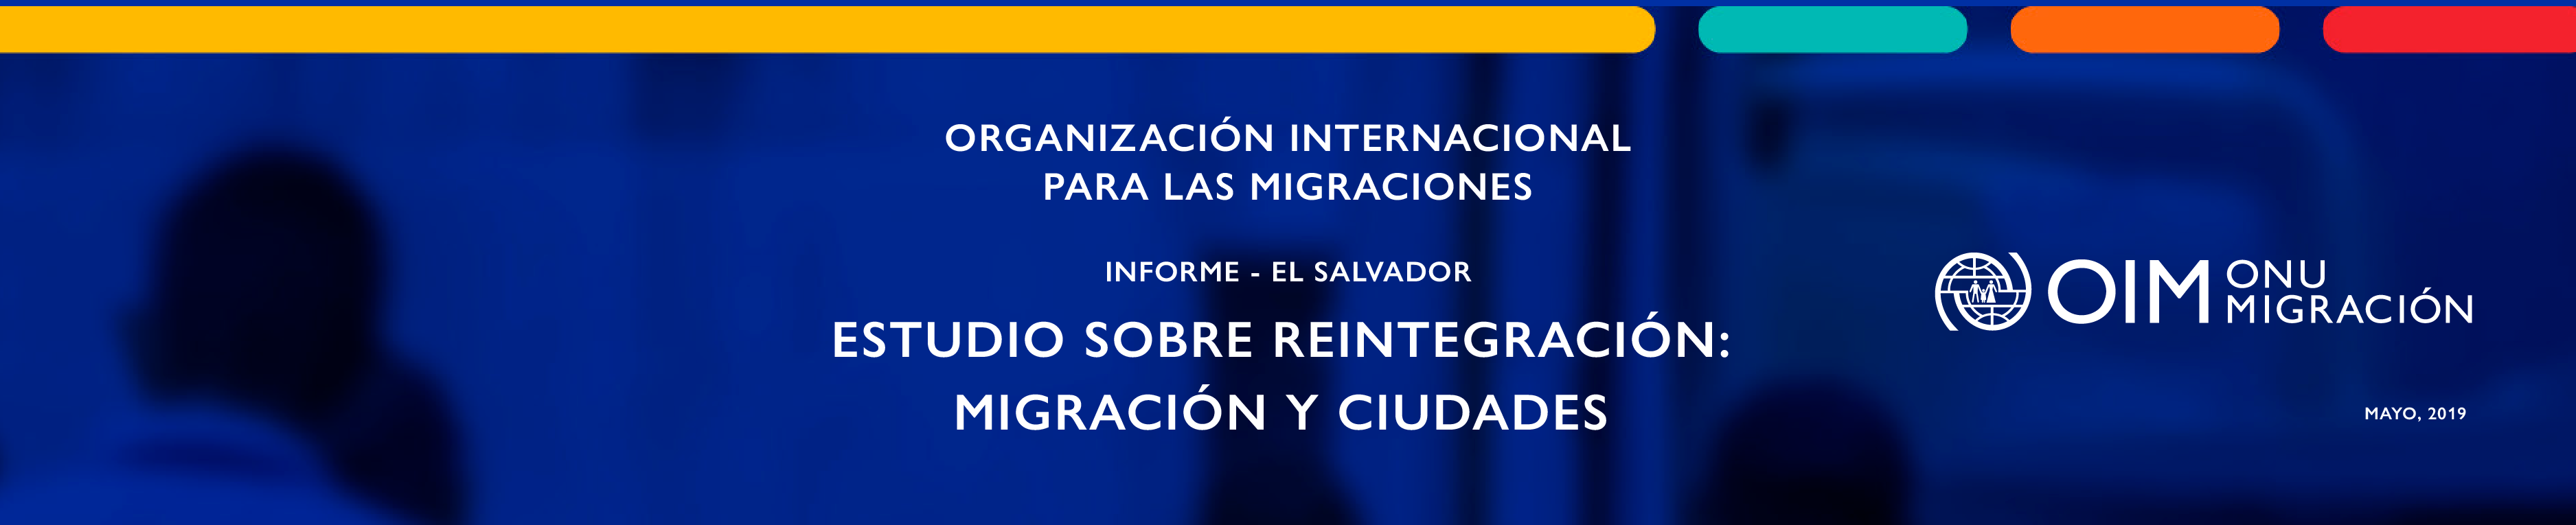 Estudio sobre reintegración: migración y ciudades | Informe El Salvador